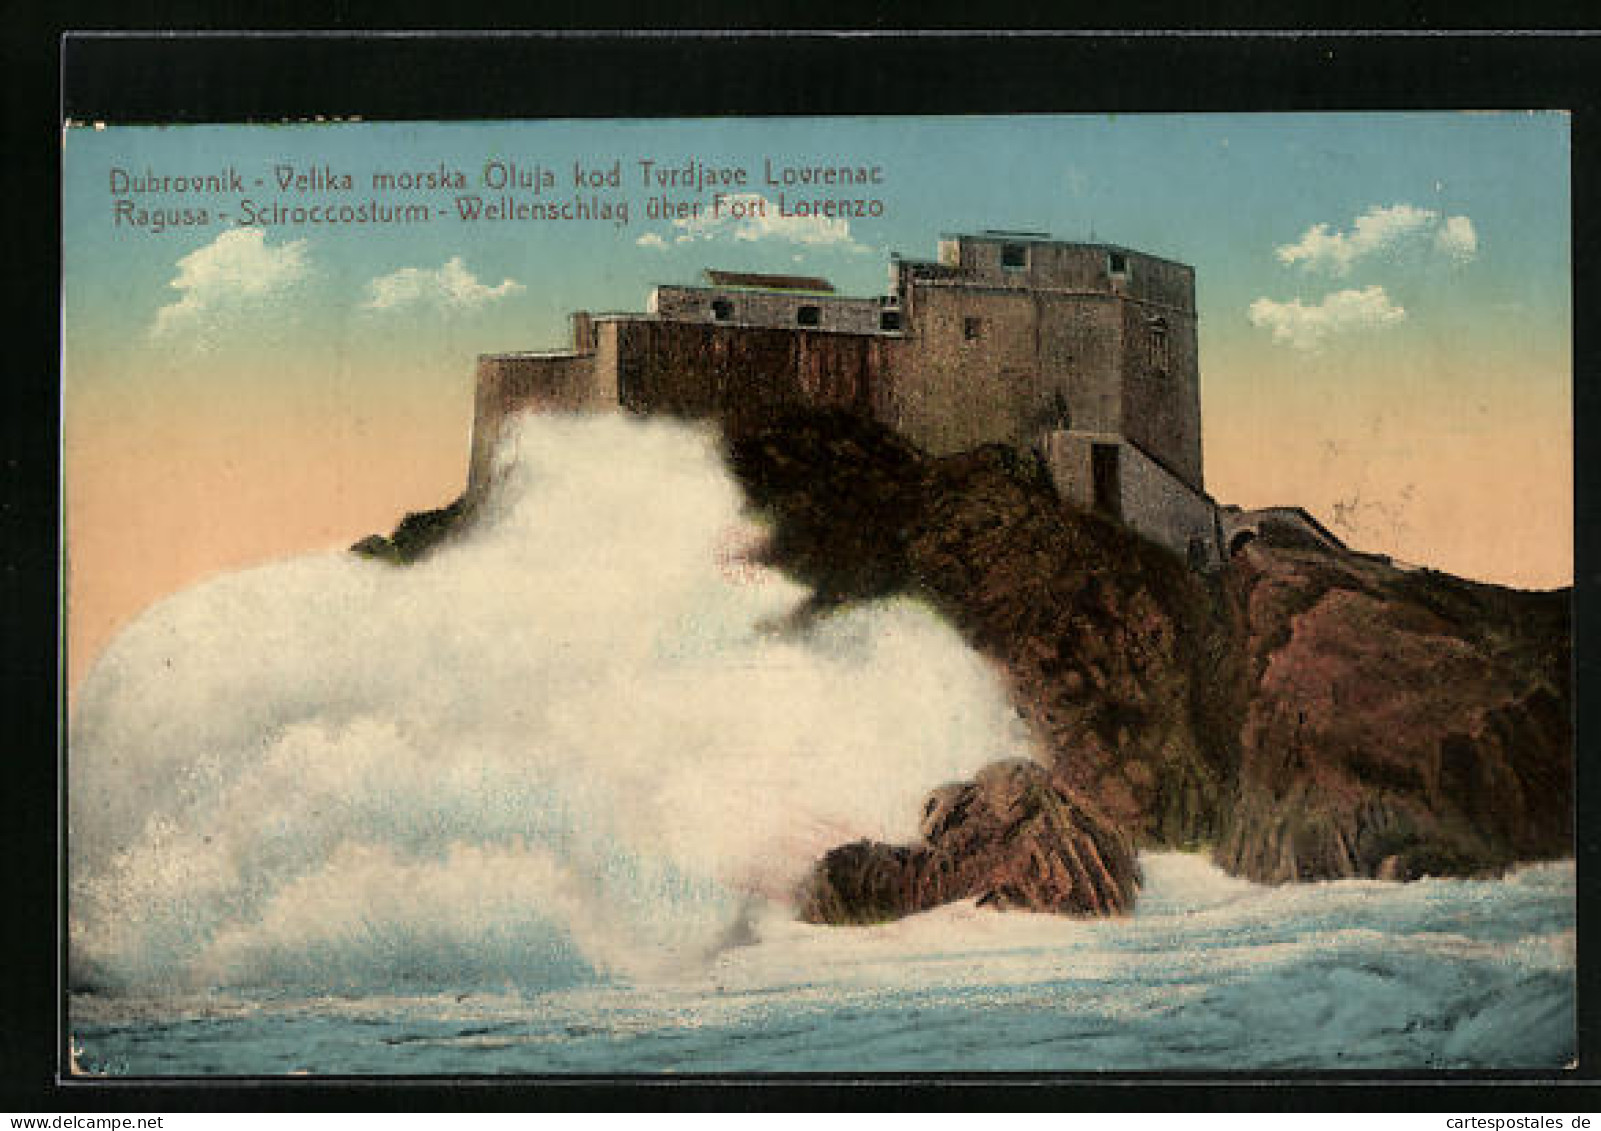 AK Ragusa, Sciroccosturm, Wellenschlag über Fort Lorenzo  - Croazia